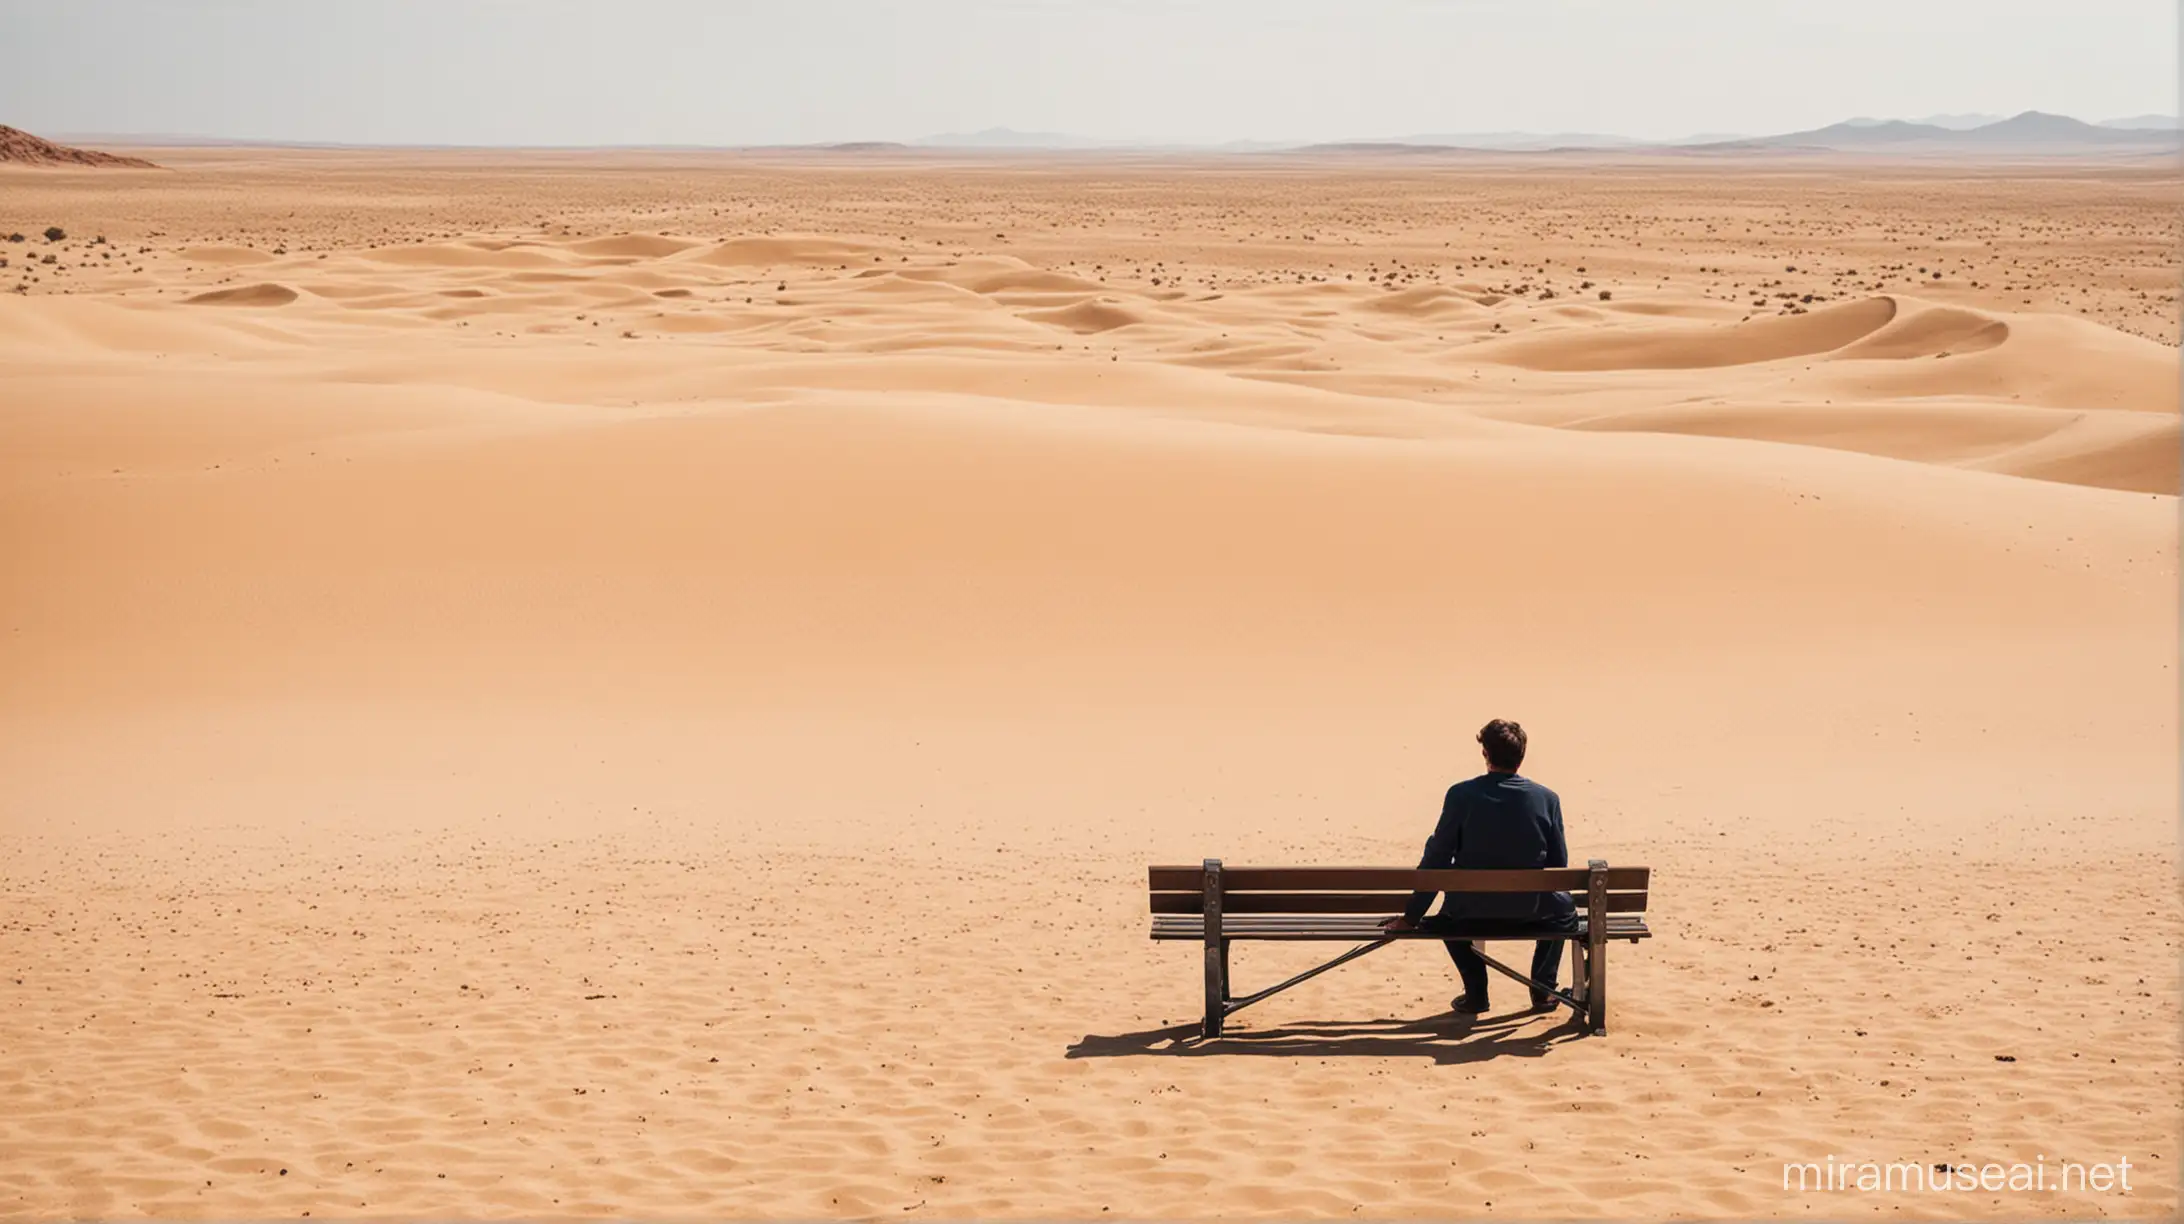 Solitary Man Sitting on Bench in Vast Sand Desert